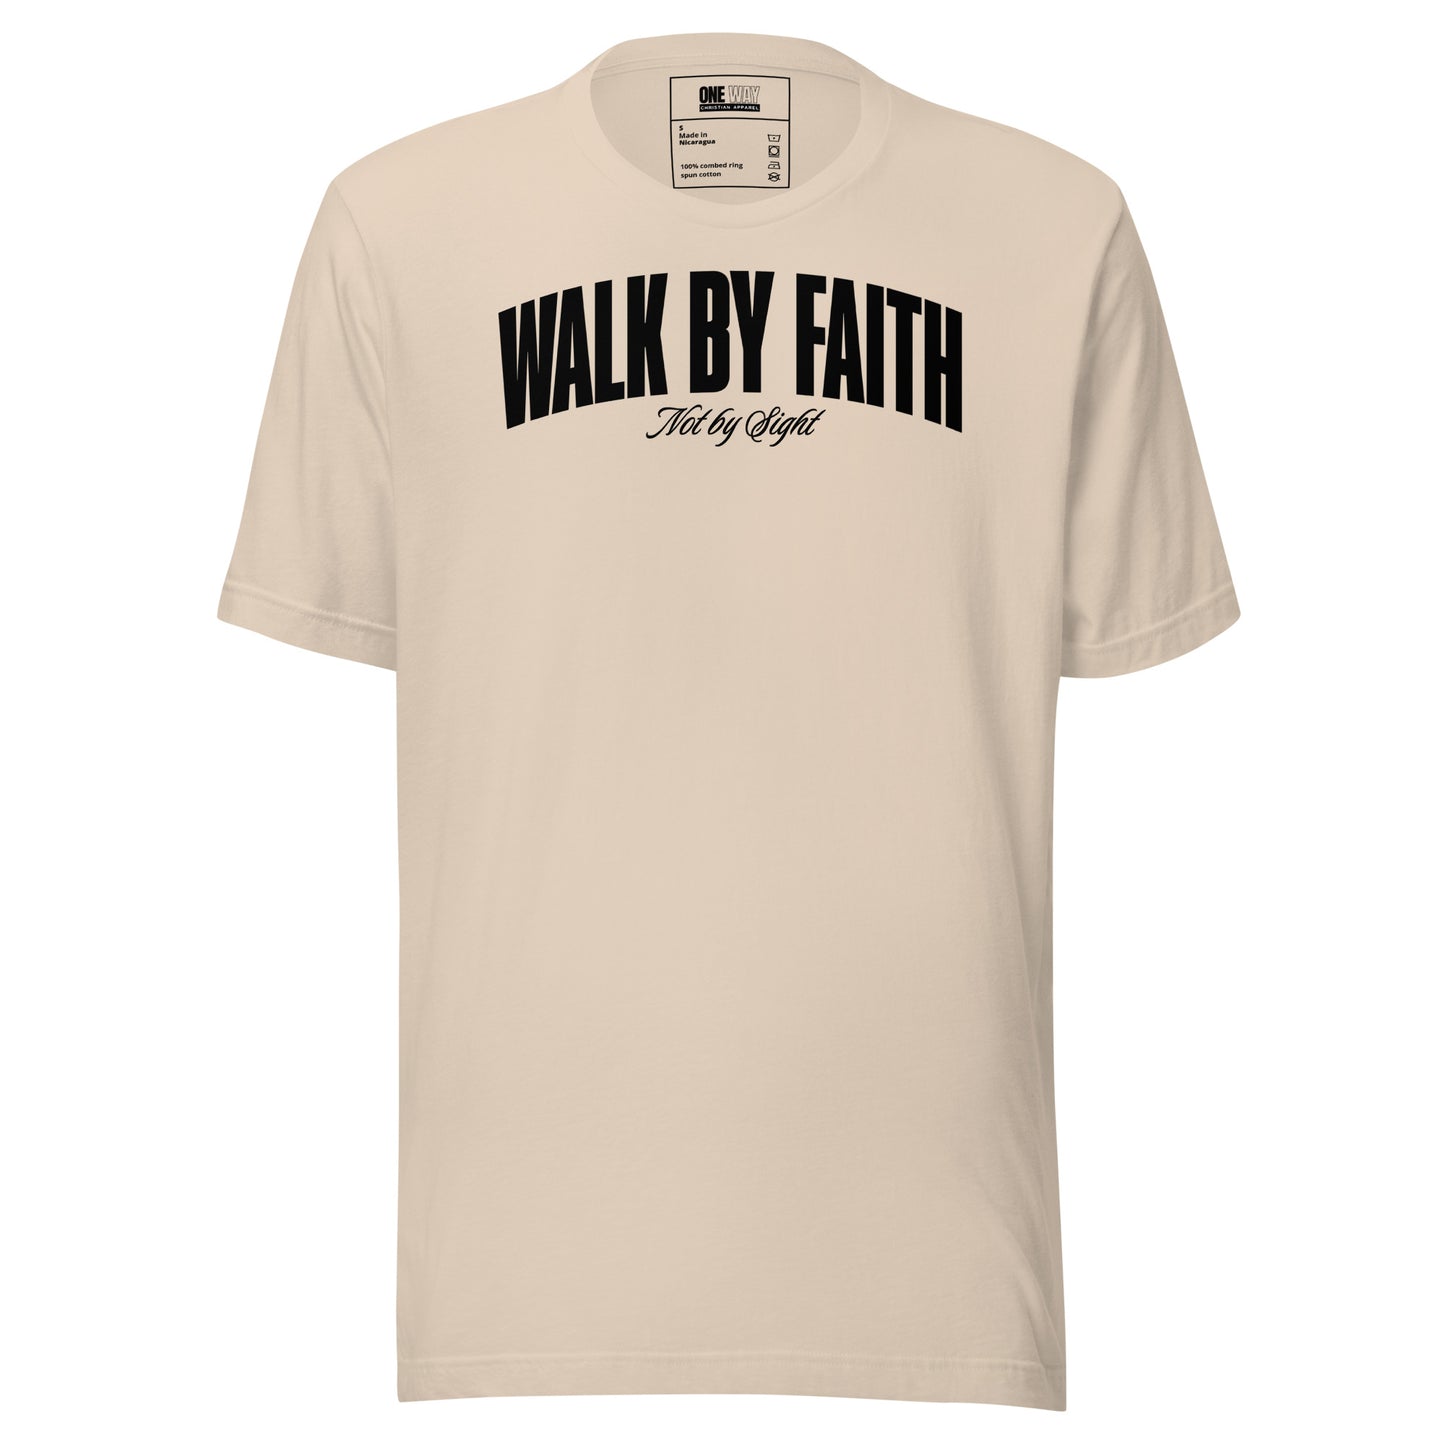 Christian t-shirt | Christian Clothing